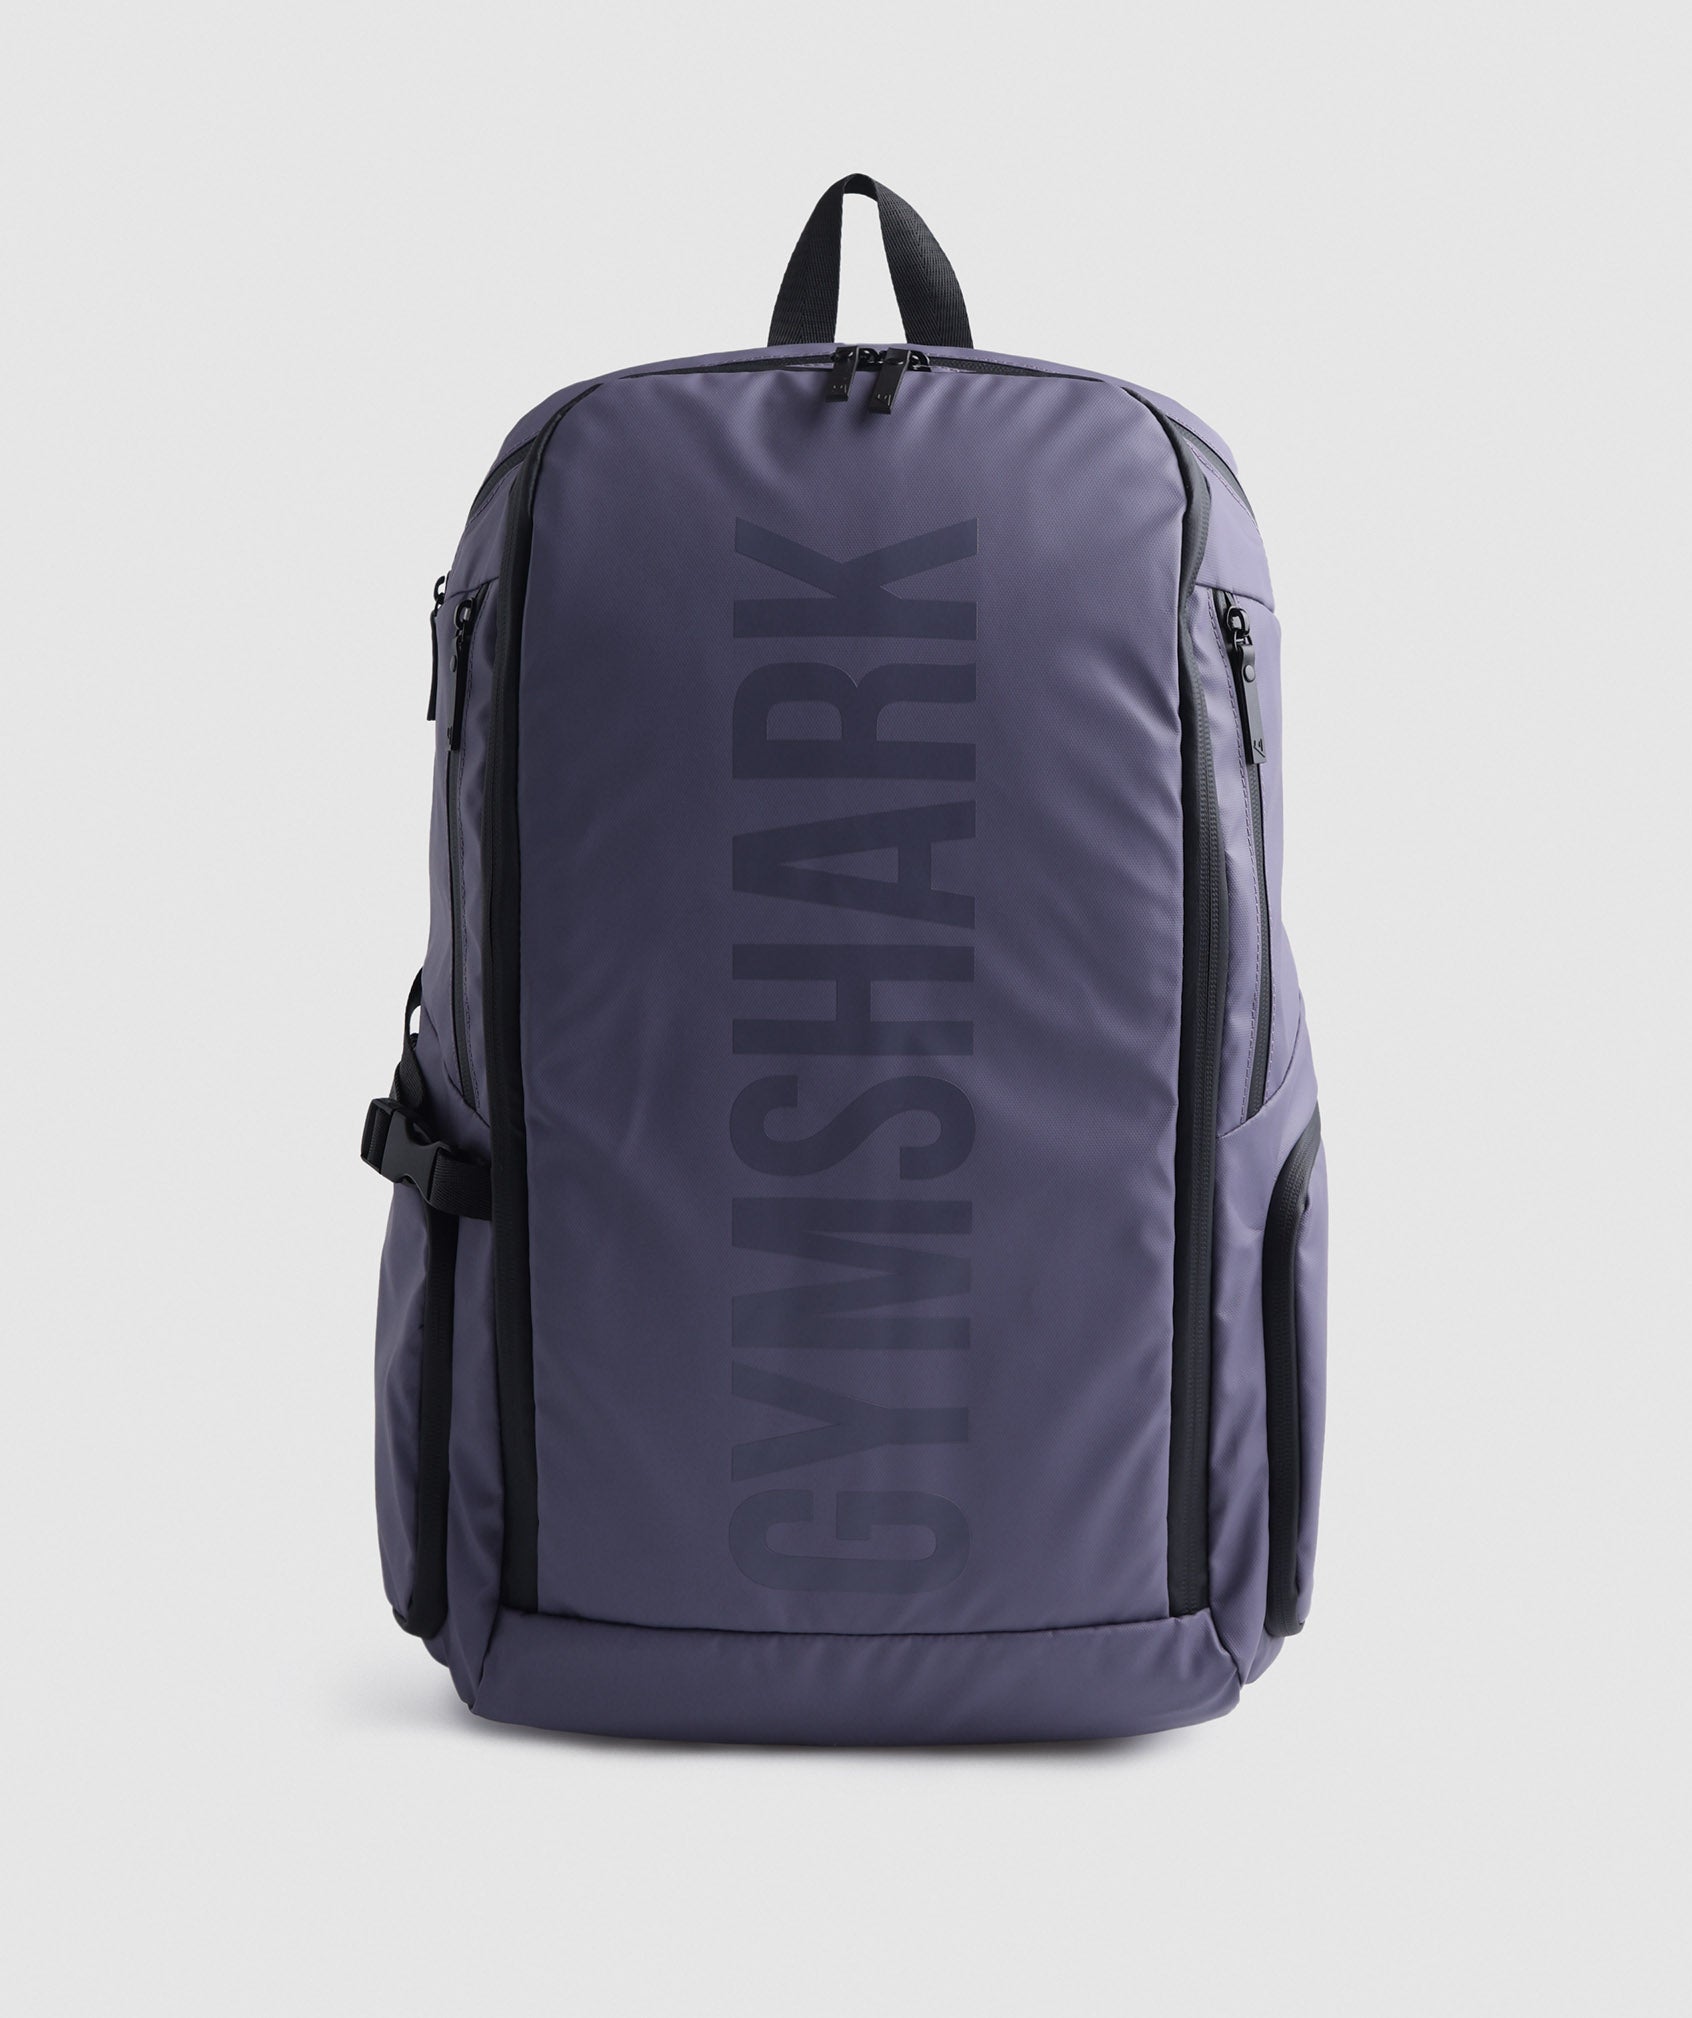 X-Series 0.3 Backpack in Mercury Purple - view 1